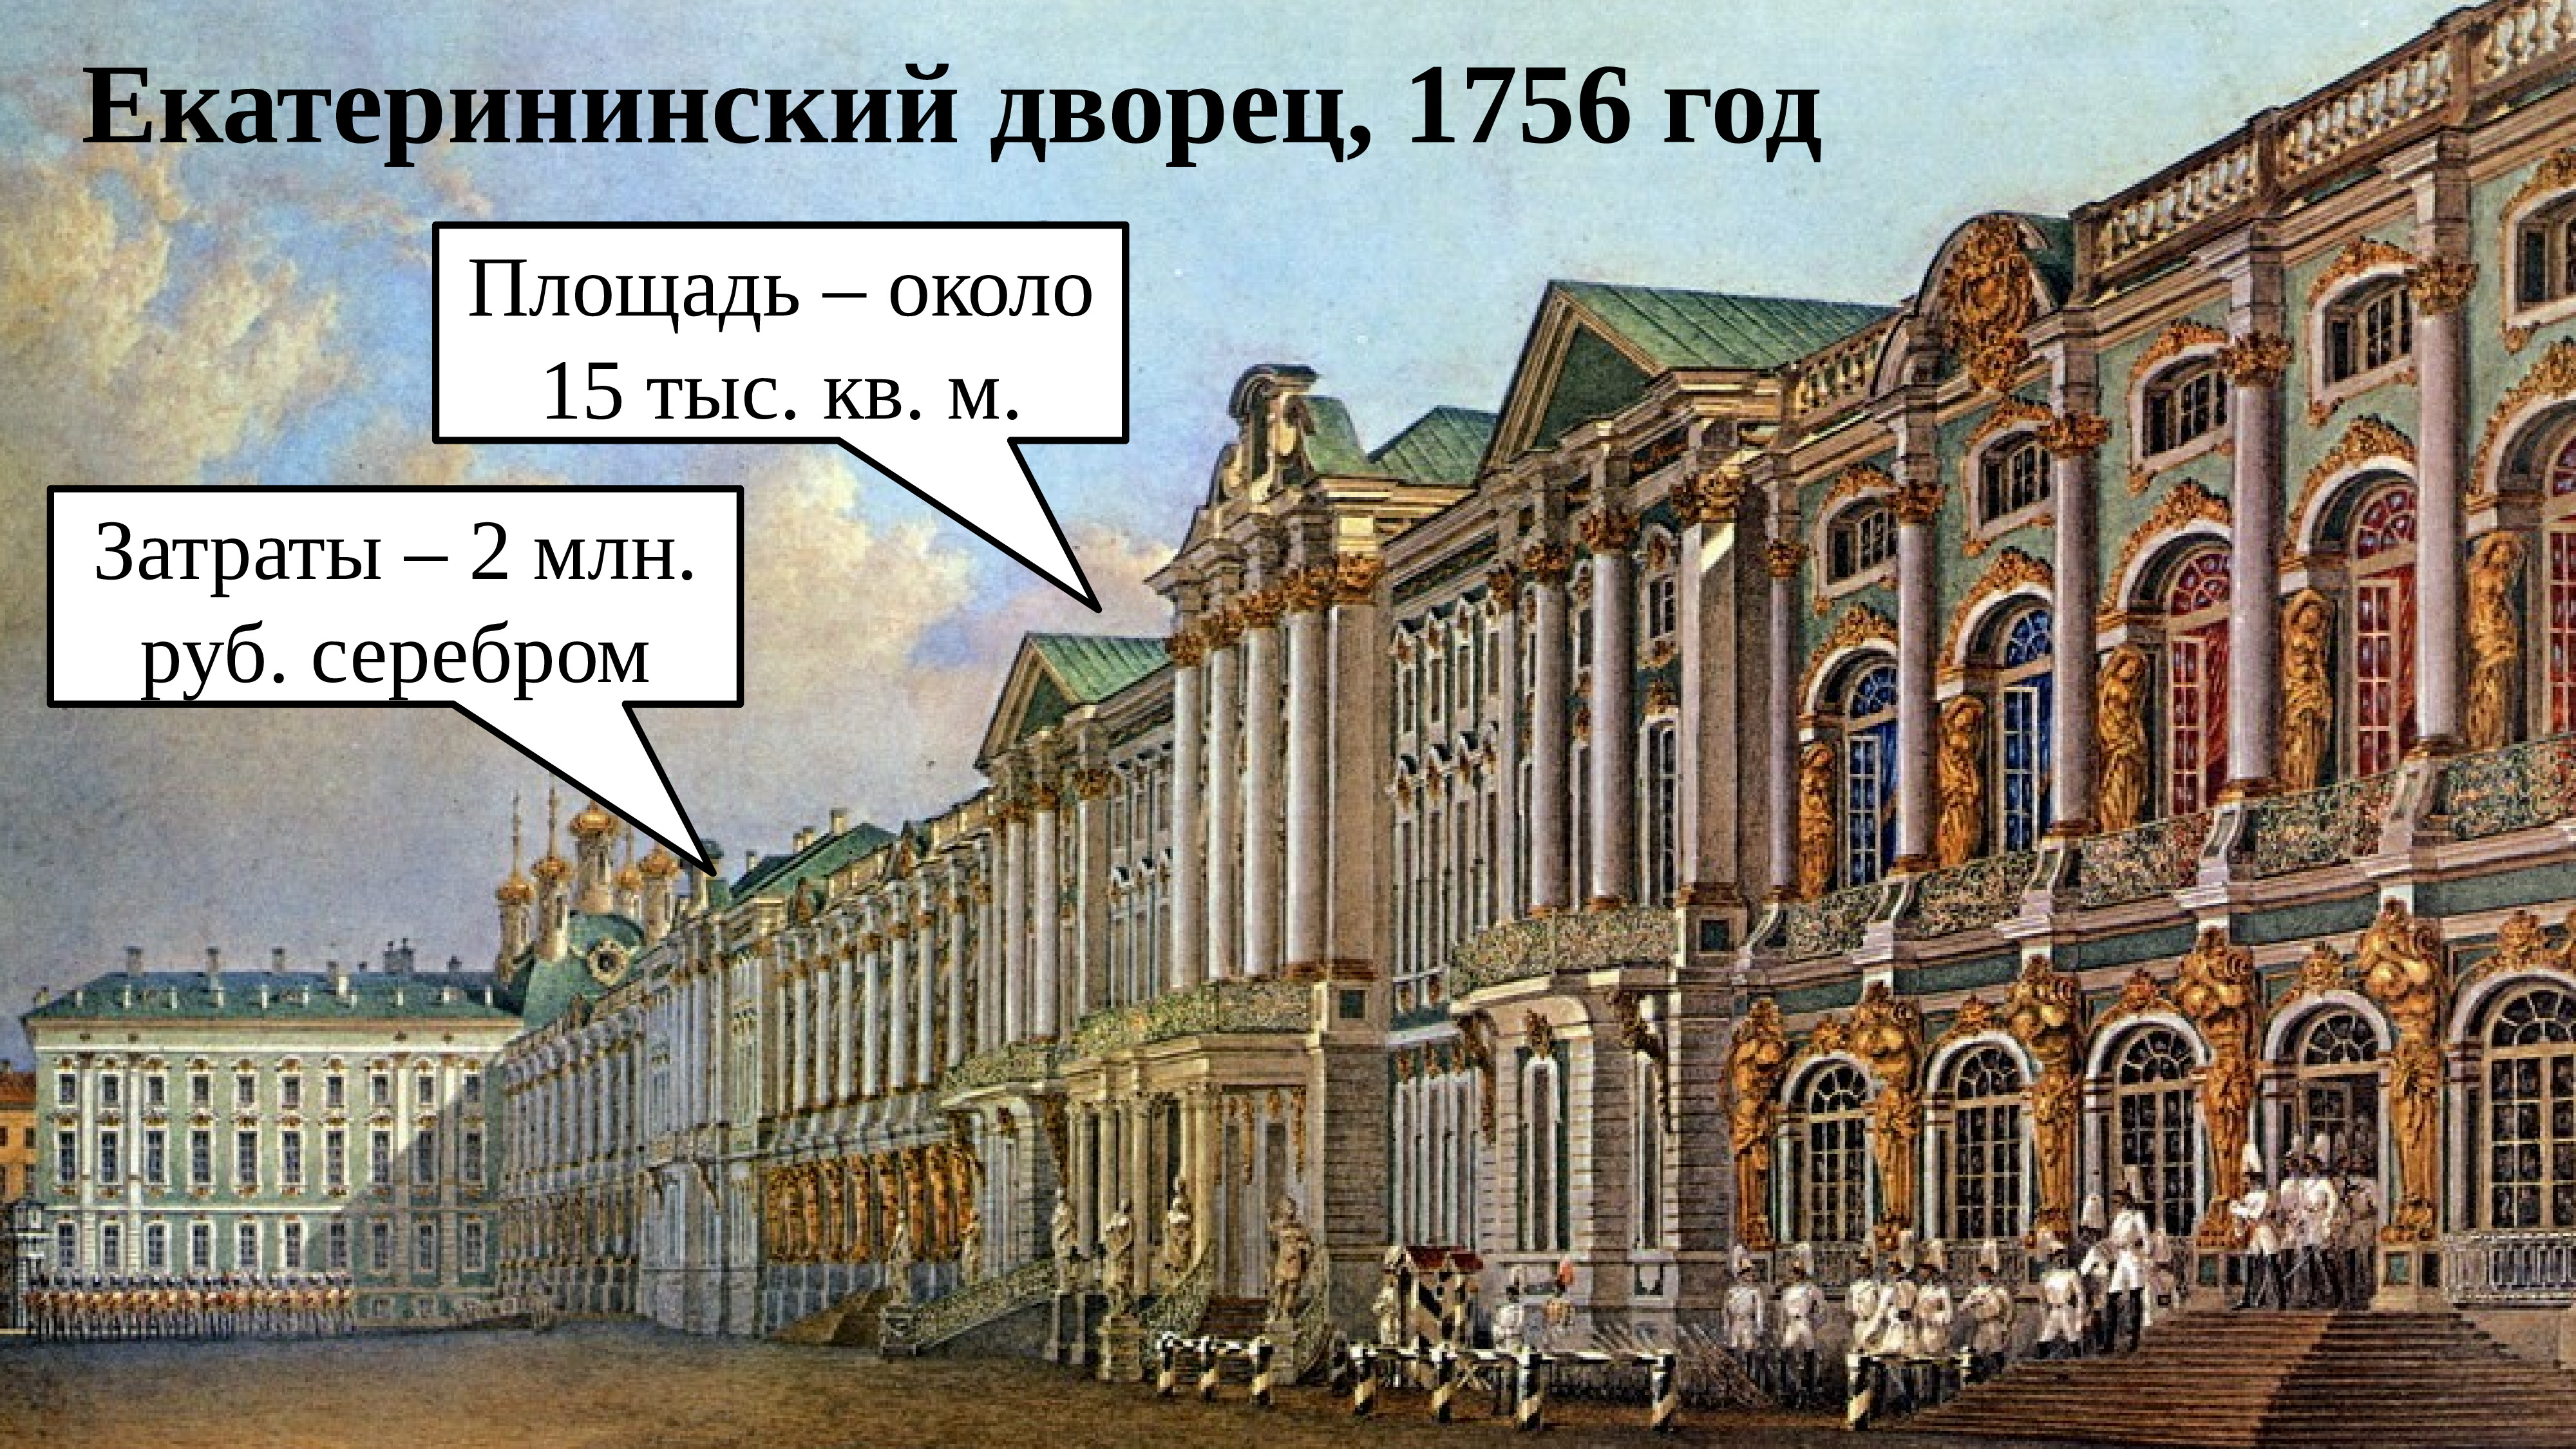 Екатерининский дворец в 18 веке